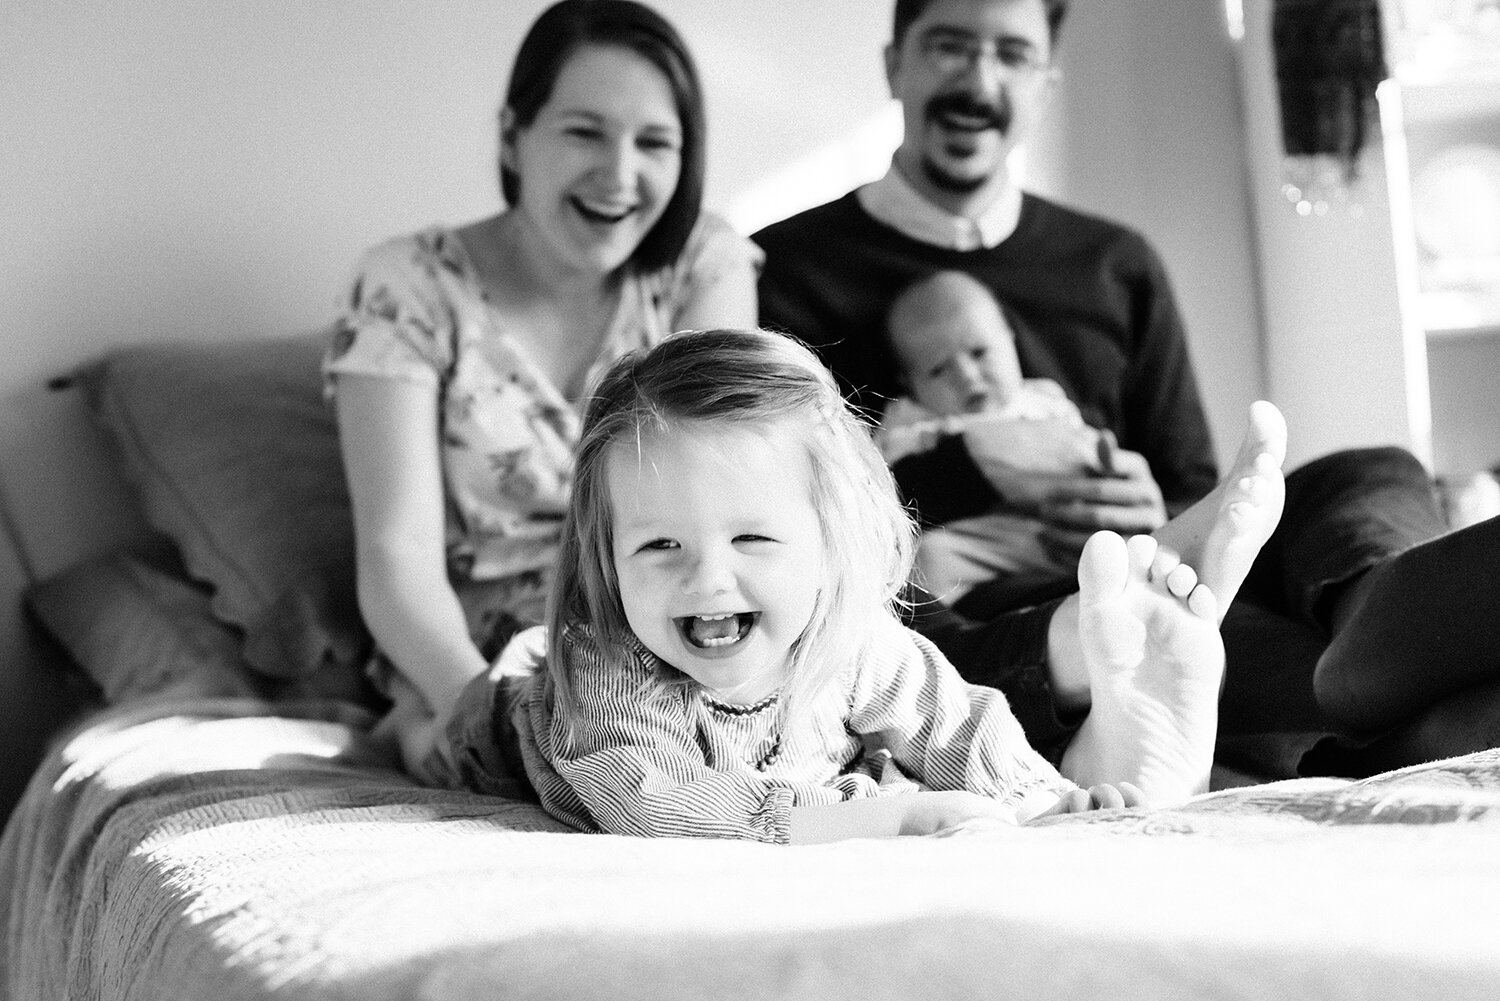 Grand Rapids in home newborn family session